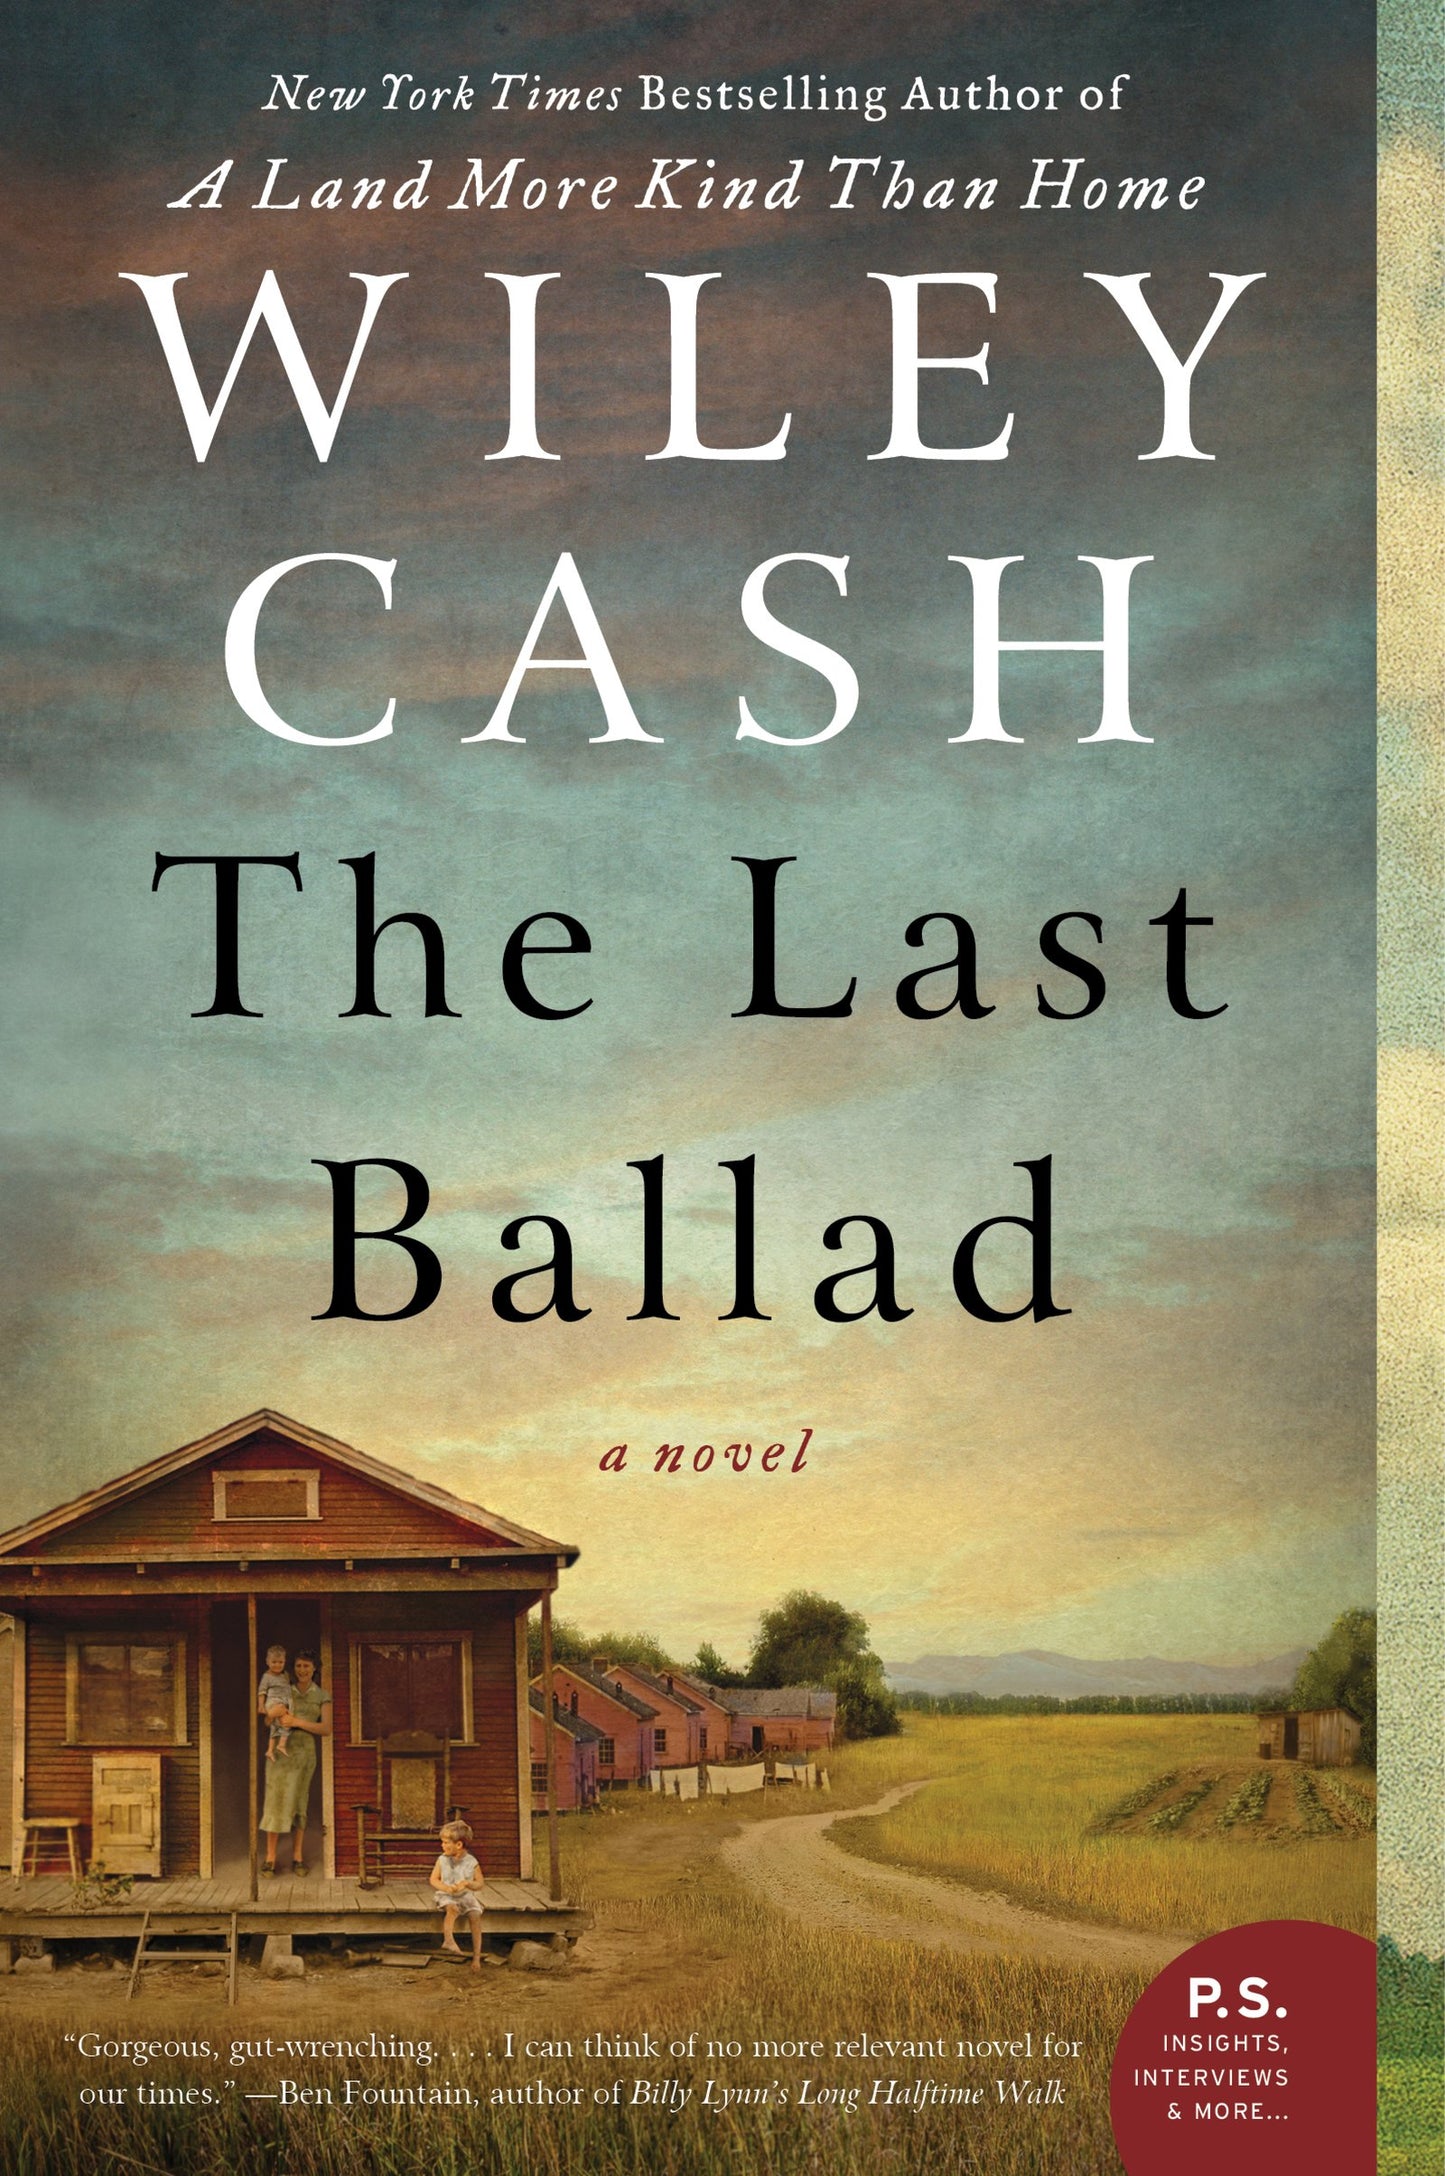 The Last Ballad: A Novel